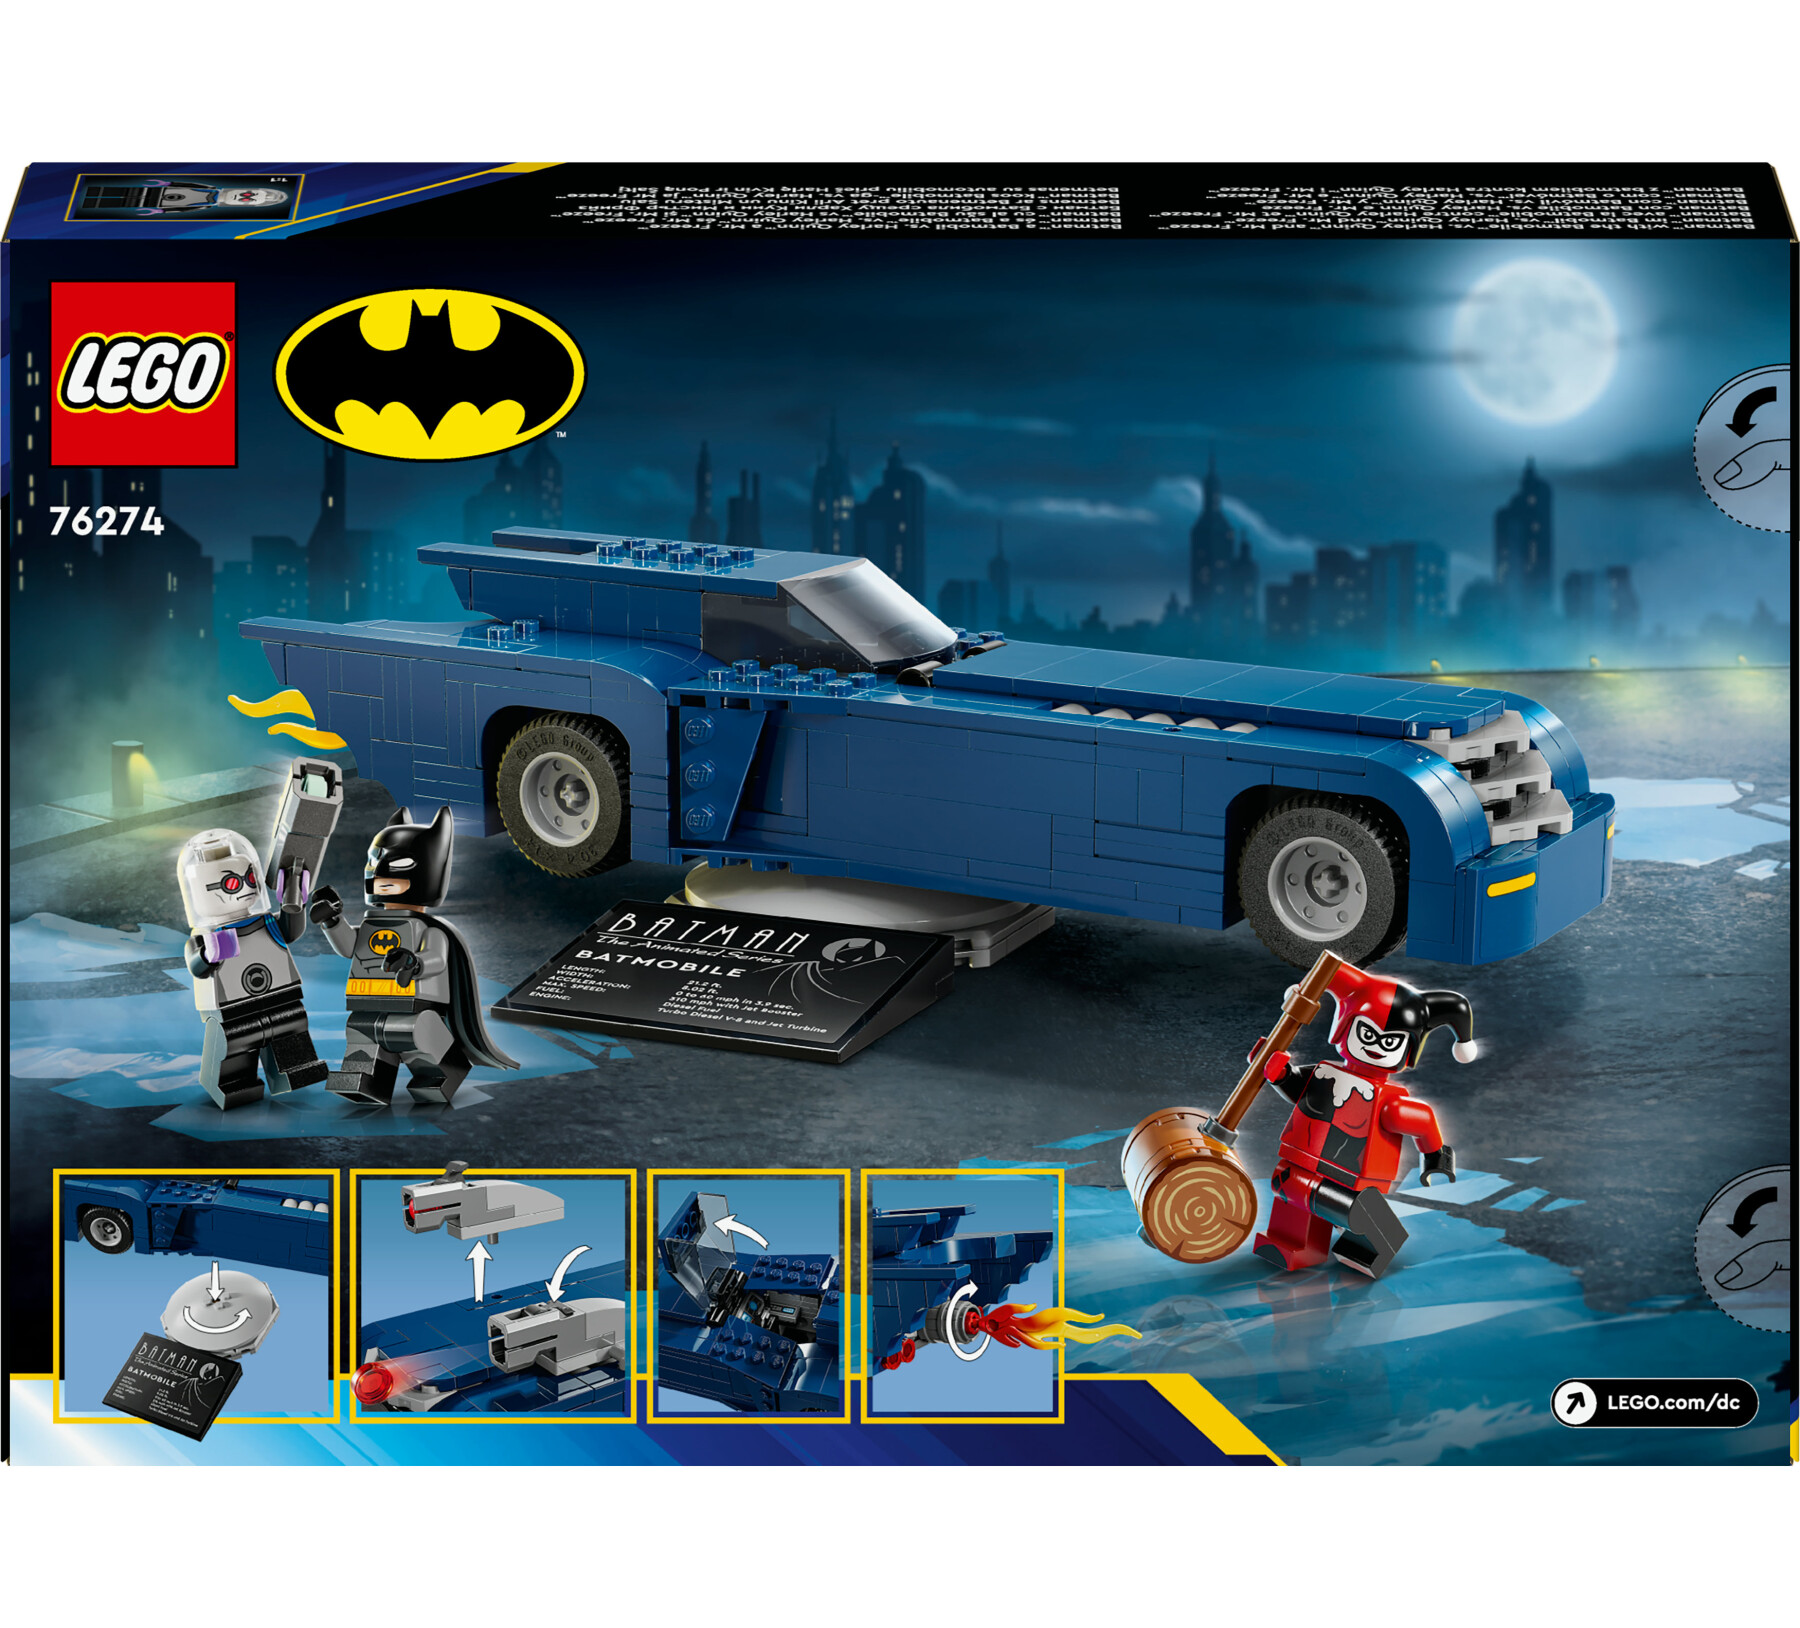 Lego dc 76274 batman con batmobile vs. harley quinn e mr. freeze, macchina giocattolo del supereroe, gioco per bambini 8+ - LEGO SUPER HEROES